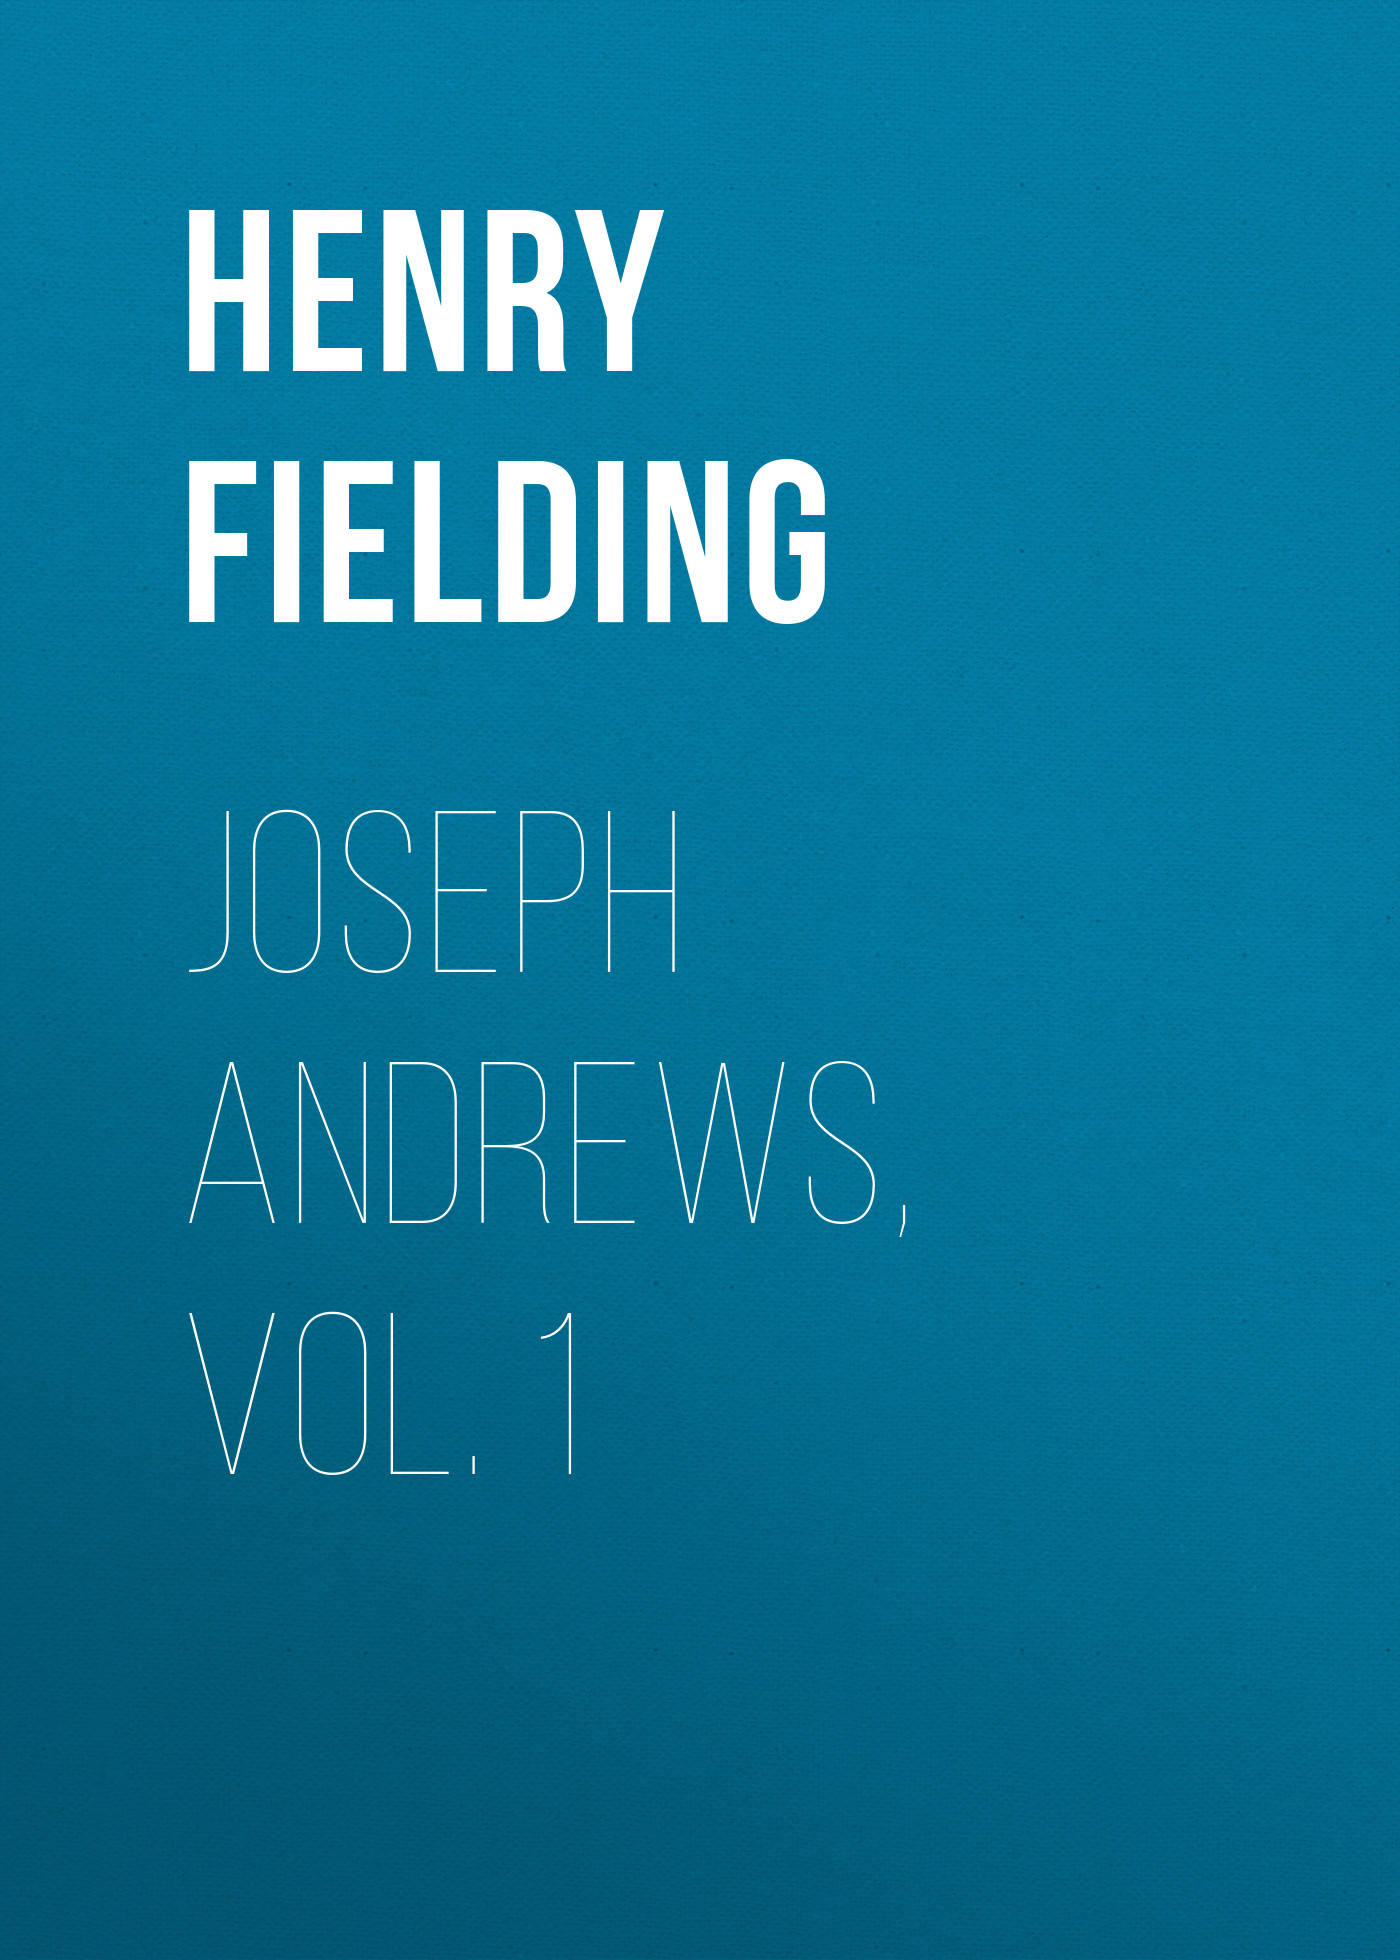 Книга Joseph Andrews, Vol. 1 из серии , созданная Henry Fielding, может относится к жанру Зарубежная классика, Зарубежная старинная литература, Зарубежный юмор. Стоимость электронной книги Joseph Andrews, Vol. 1 с идентификатором 25202263 составляет 0 руб.